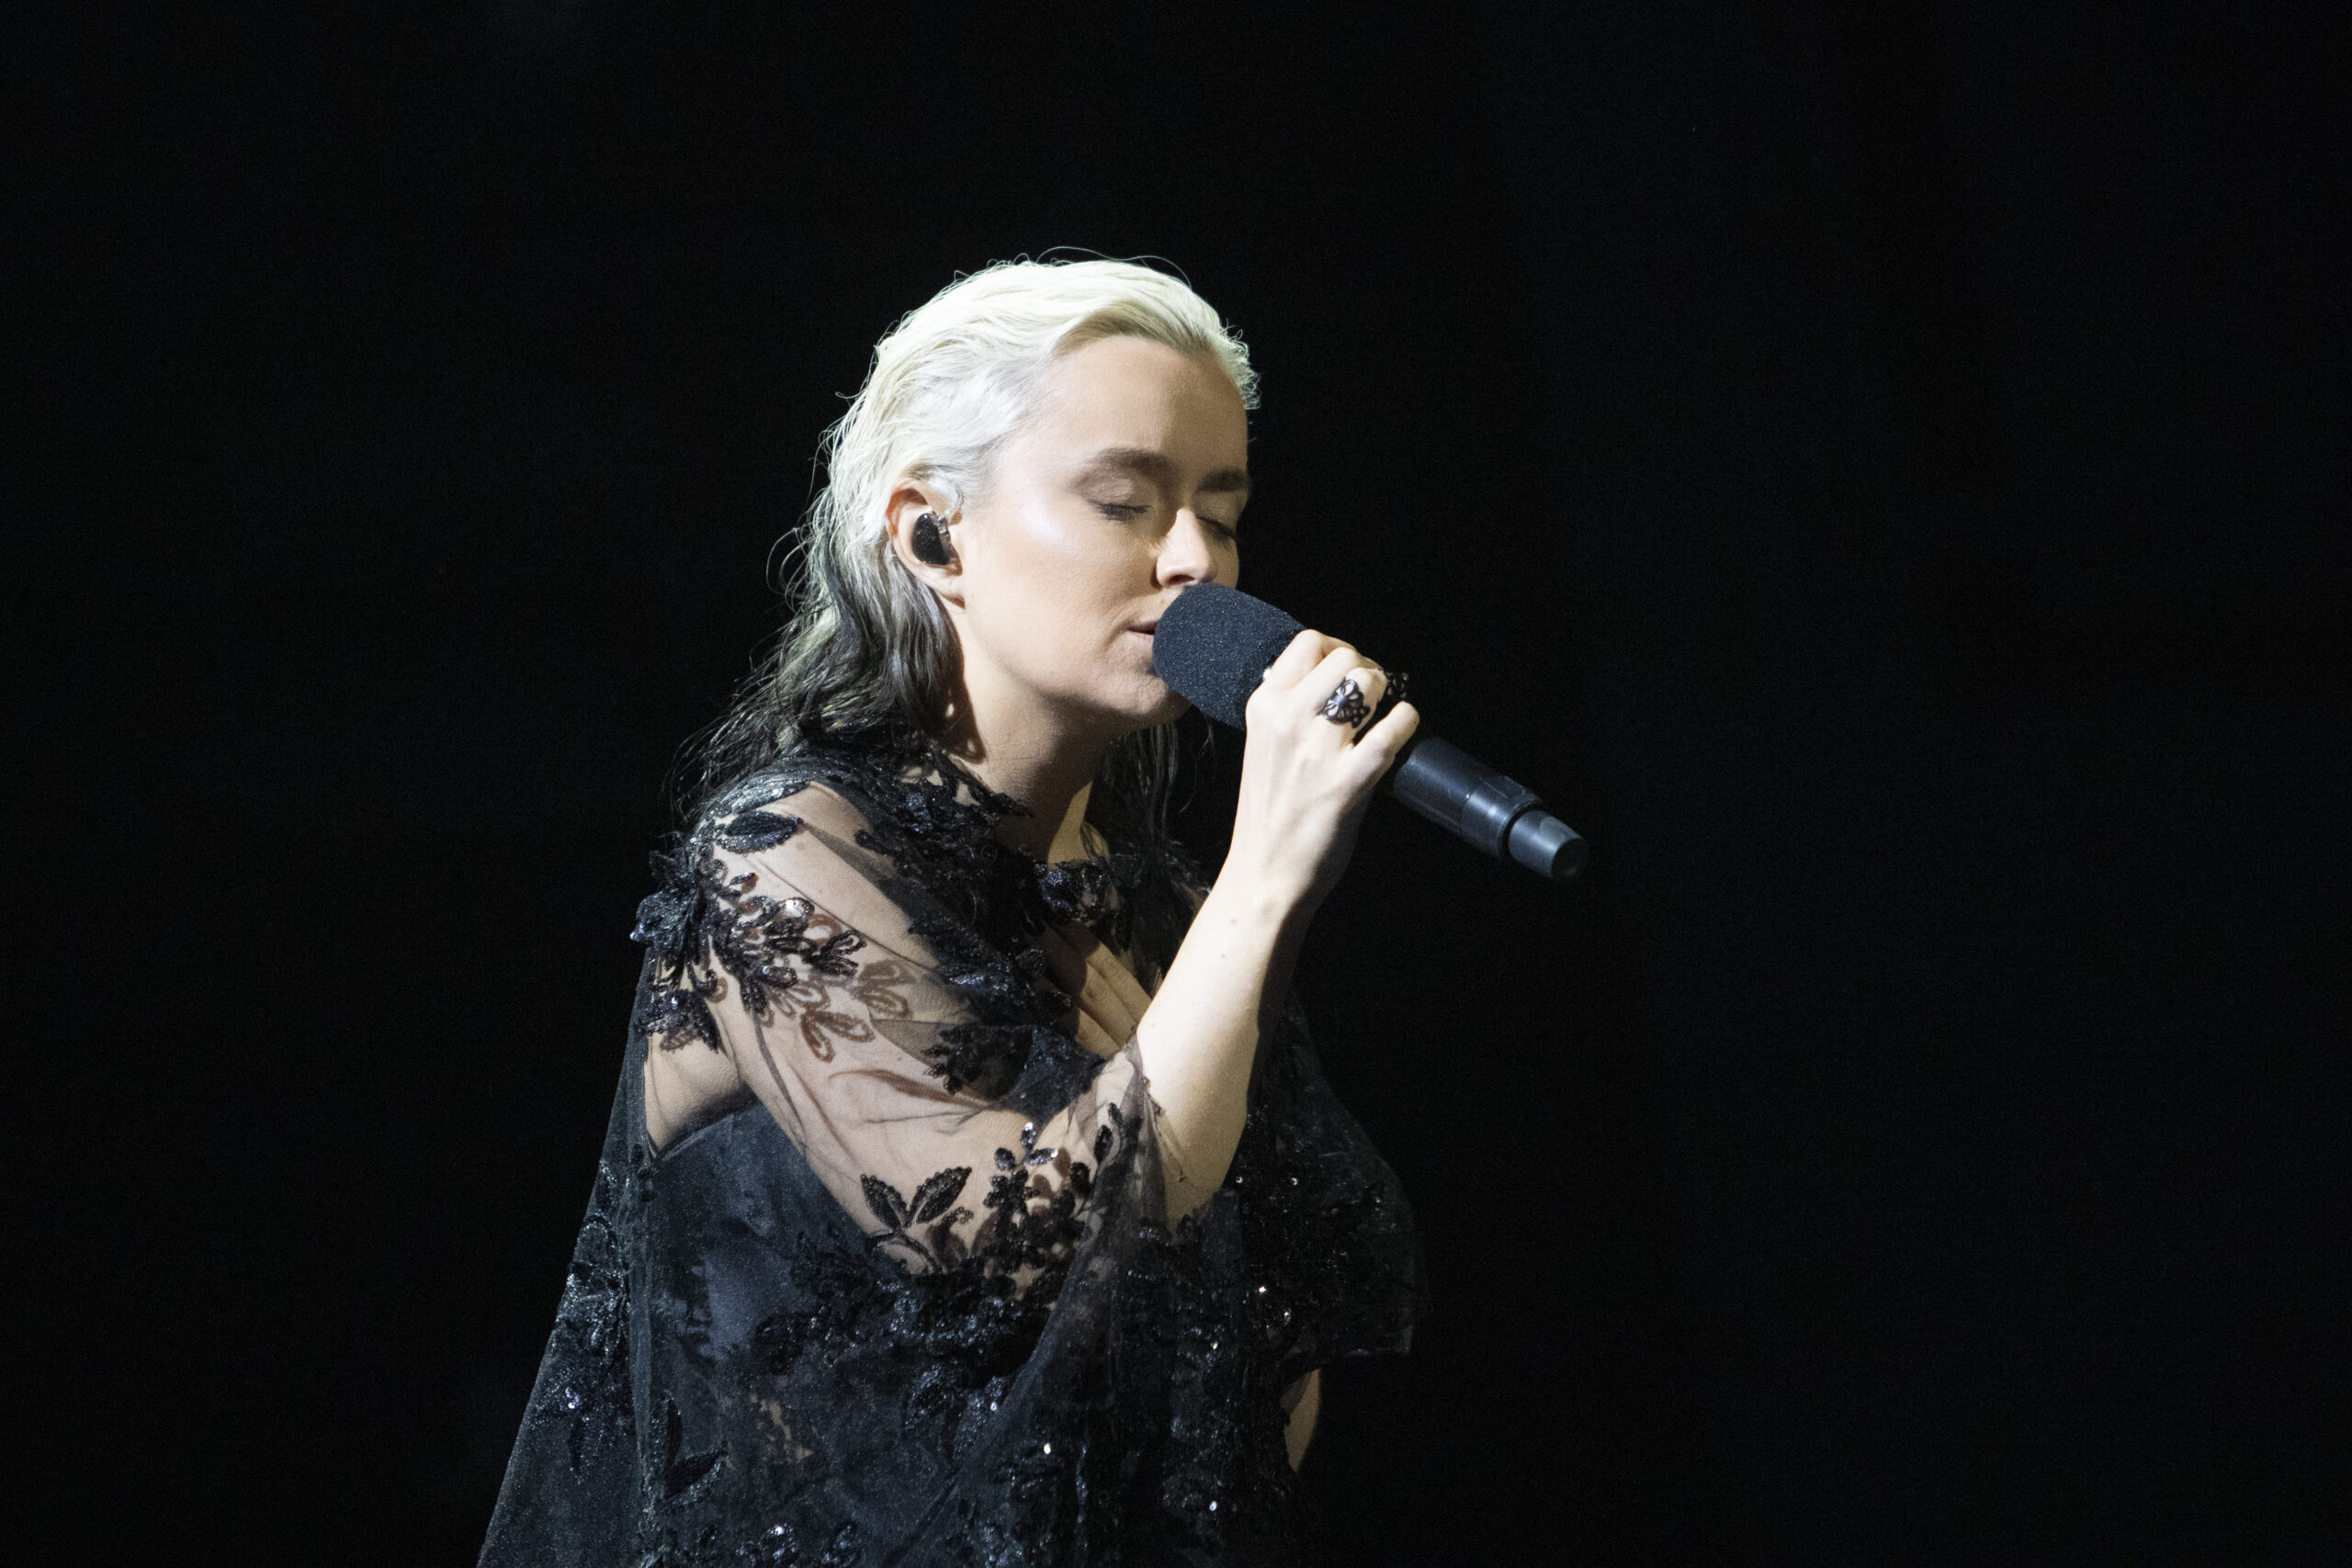 Elsie Bay en la segunda semifinal del Melodi Grand Prix 2023 / Ulrik Kramer - NRK